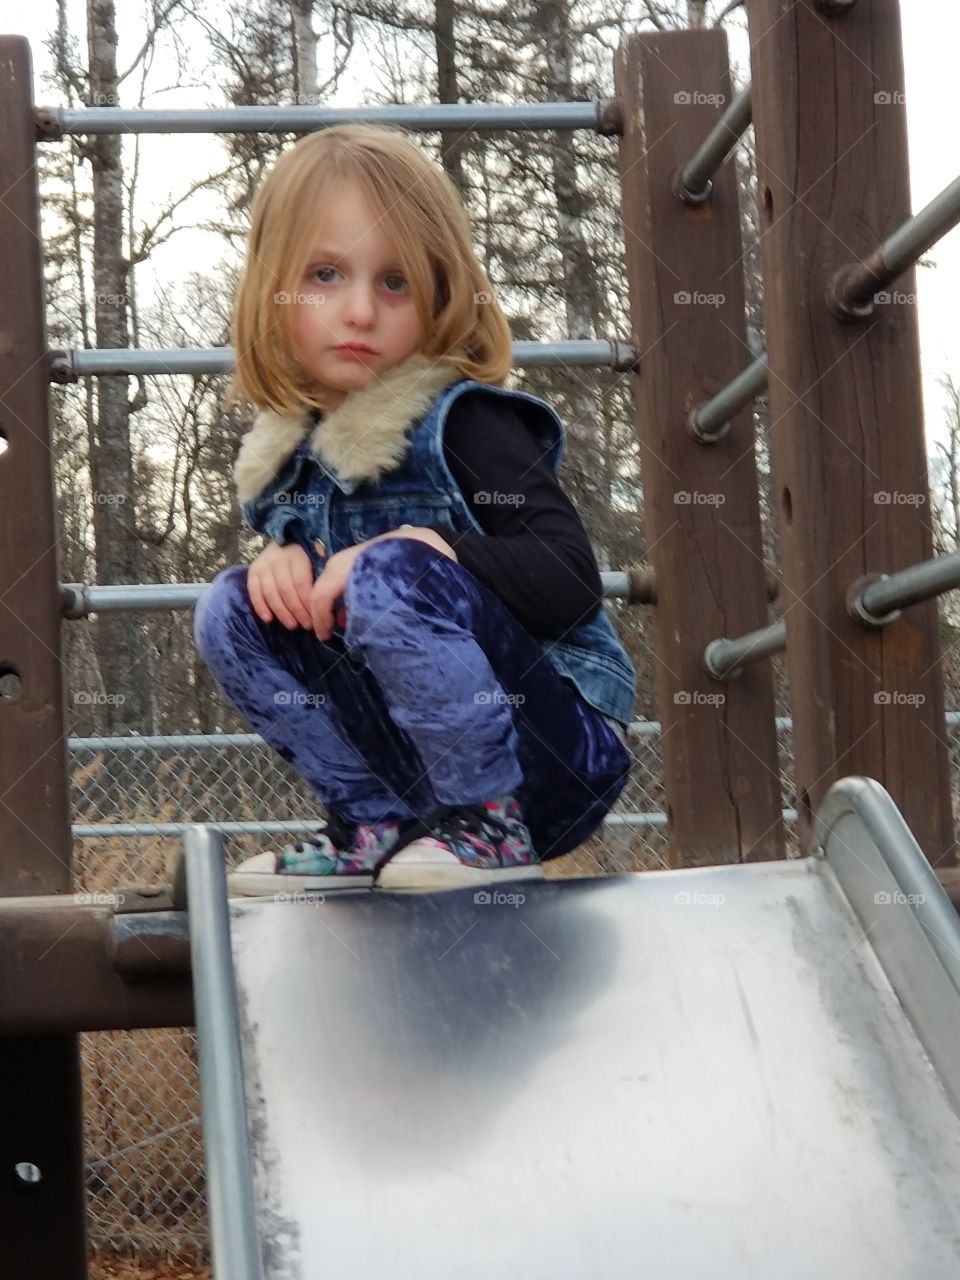 Granddaughter on slide